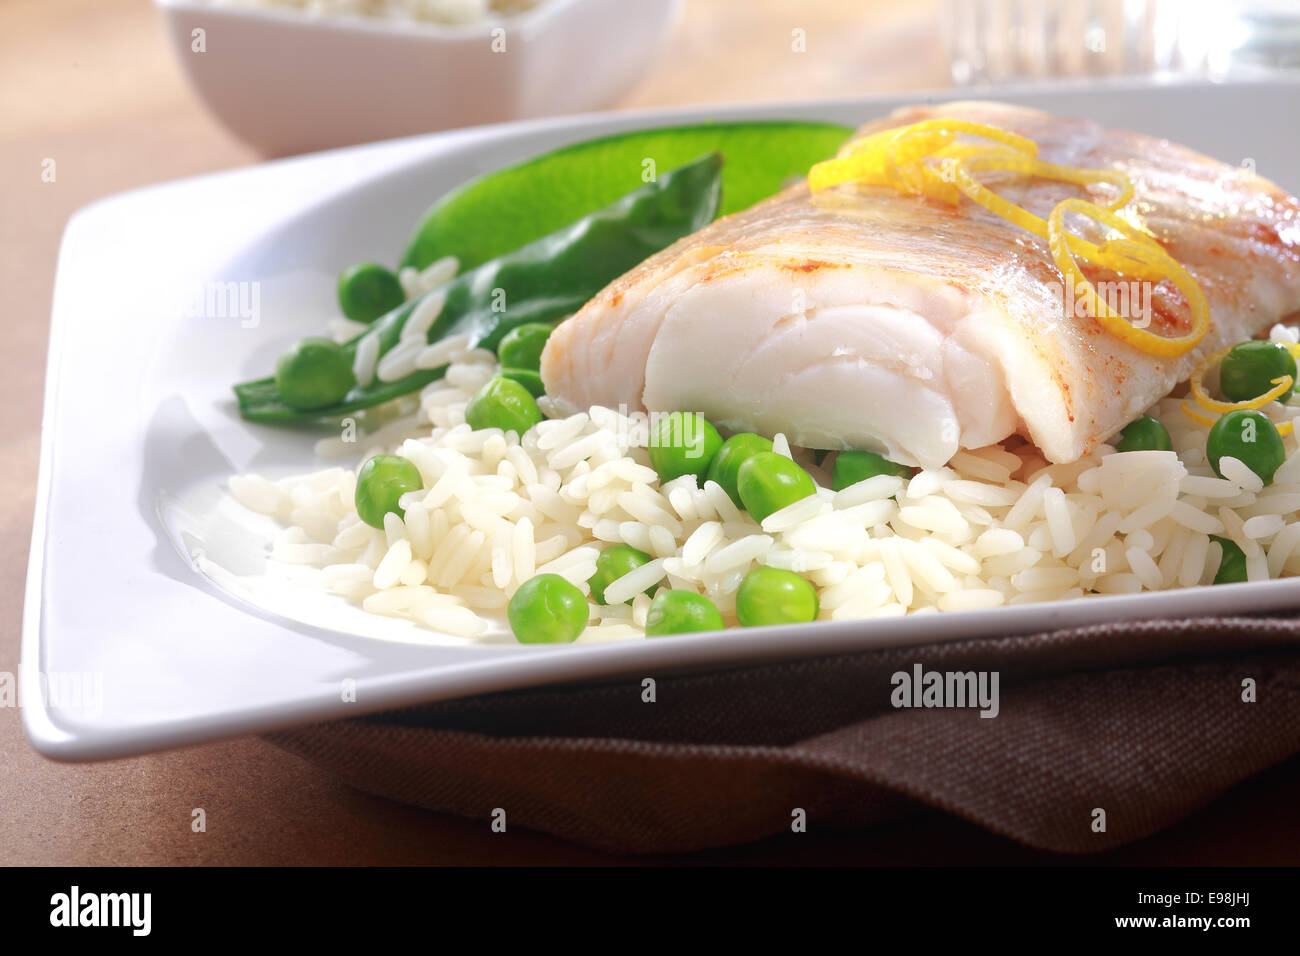 Gebackenes Fischfilet, garniert mit frischer Zitronenschale, Reis und Erbsen gesund essen, auf einem weißen Teller Stockfoto